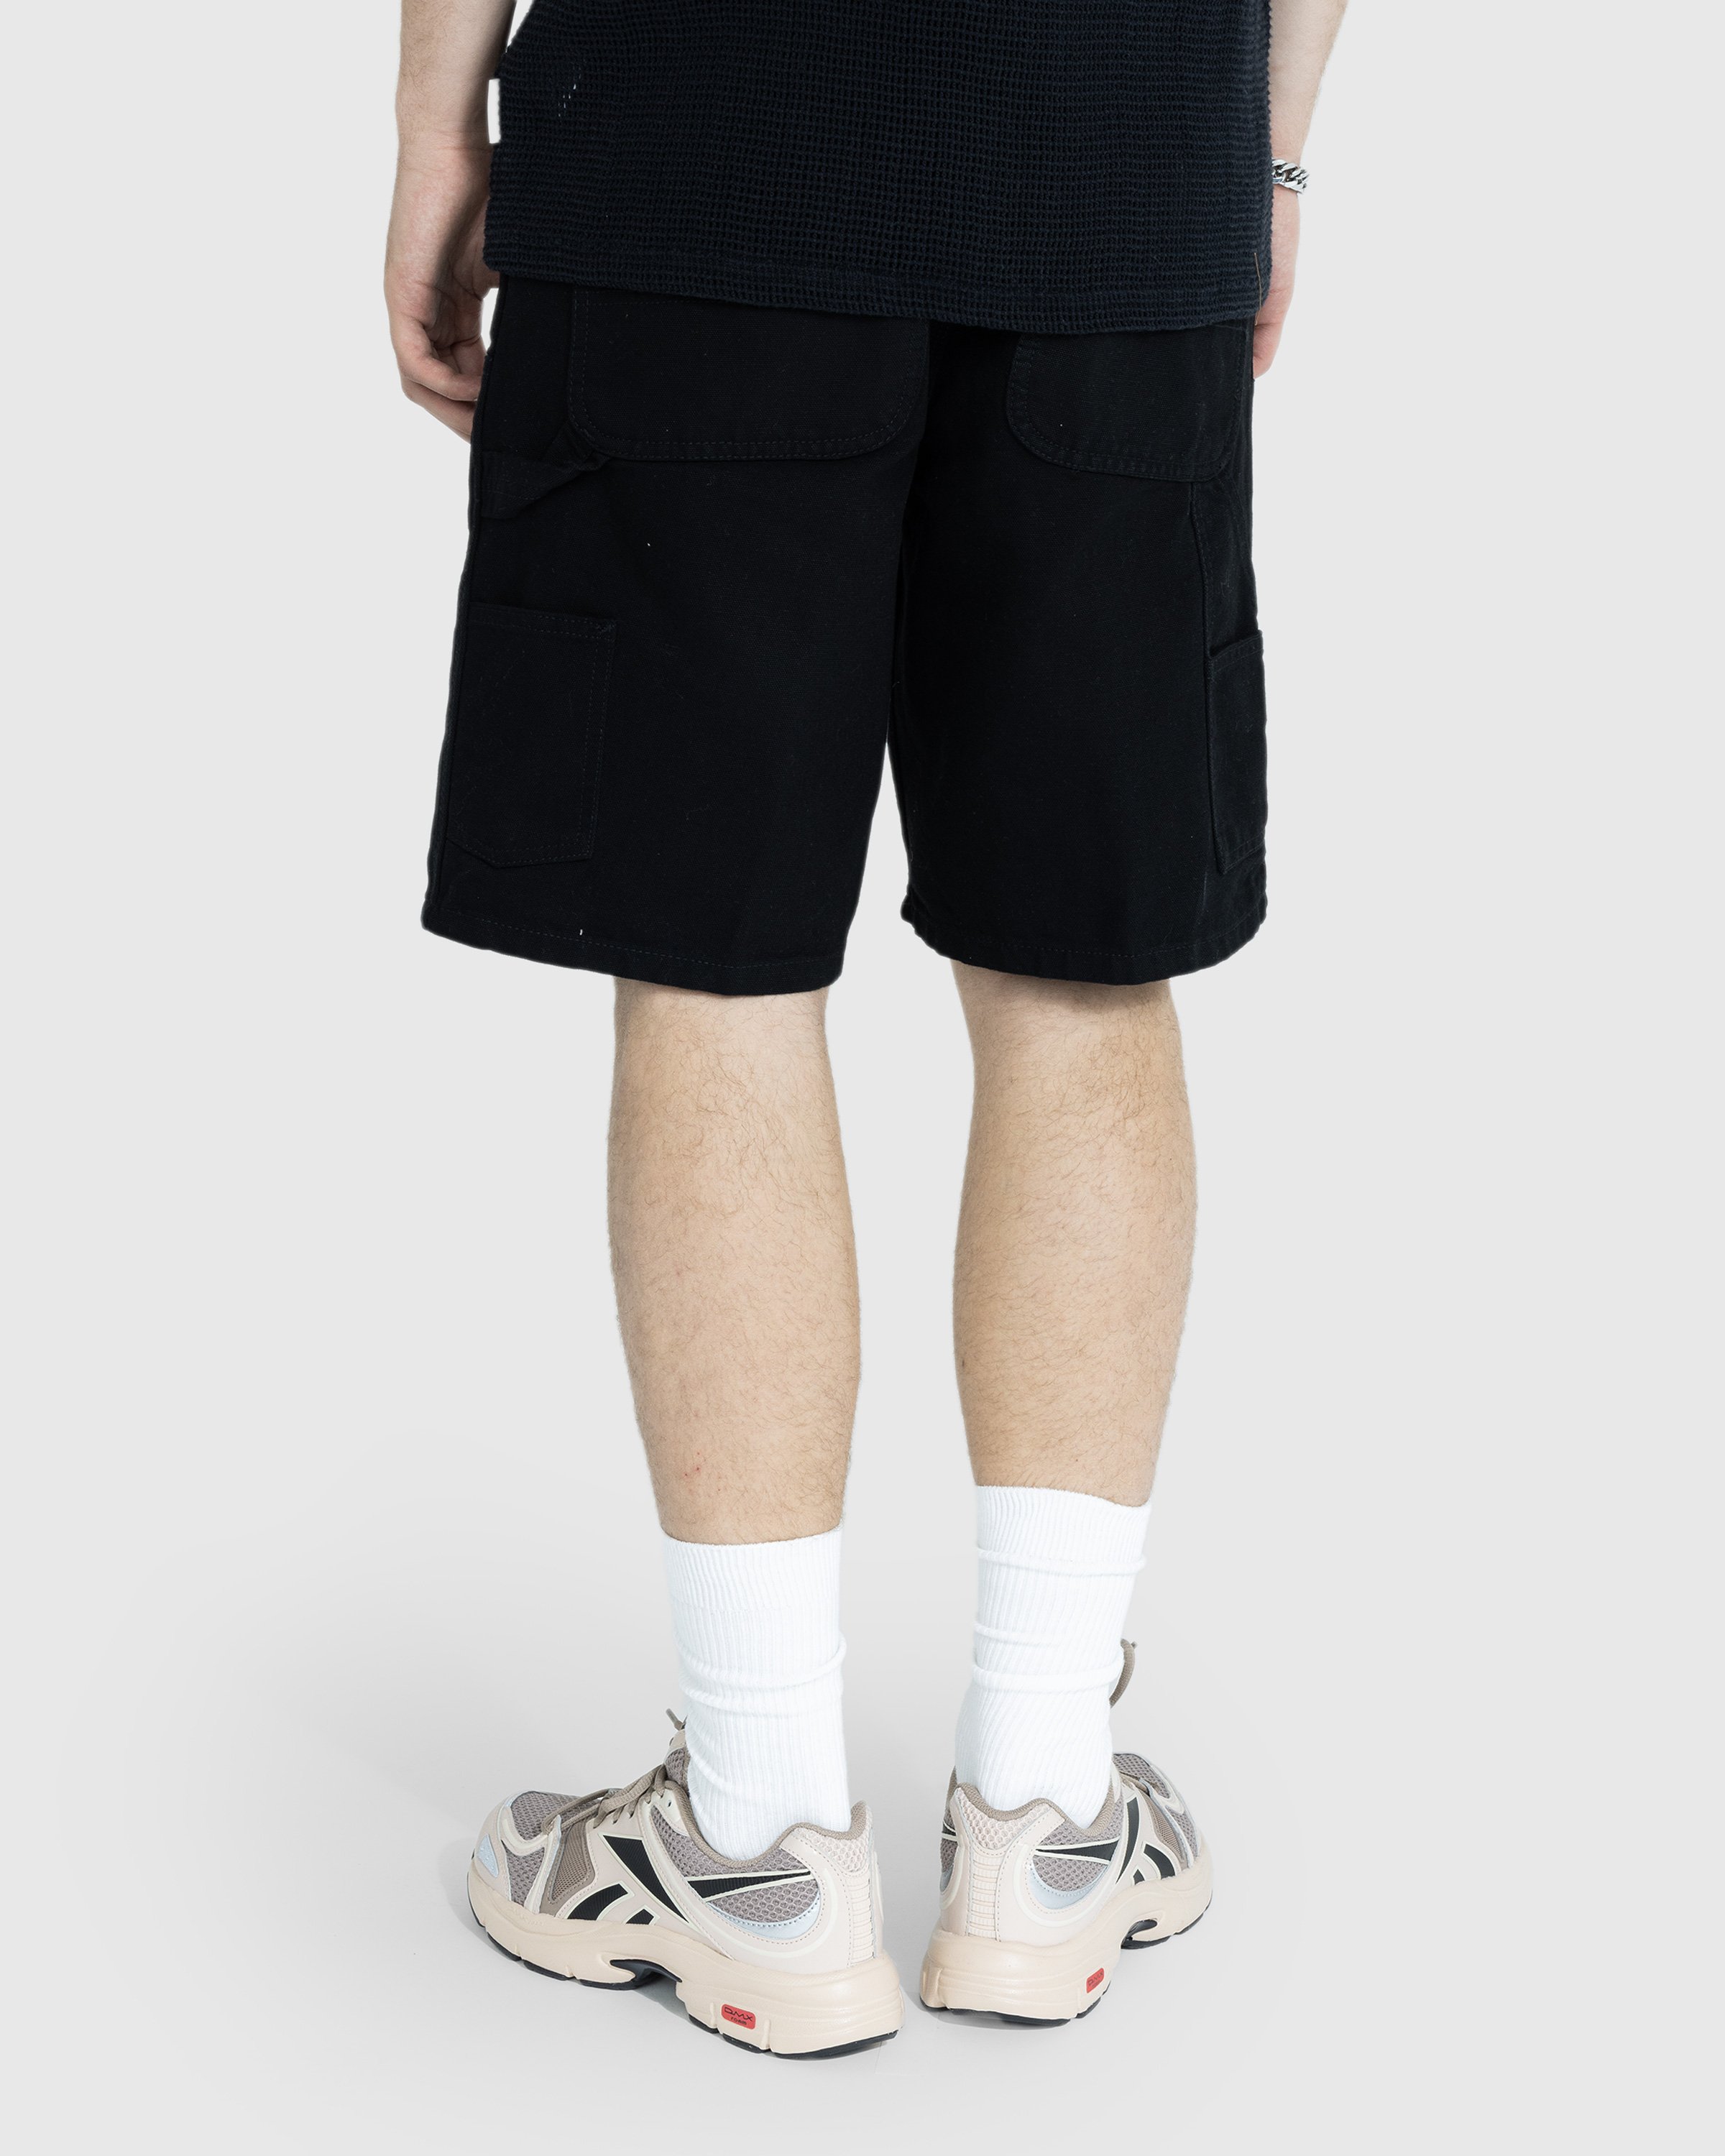 Carhartt WIP - Double Knee Short Rinsed Black - Clothing - Black - Image 3